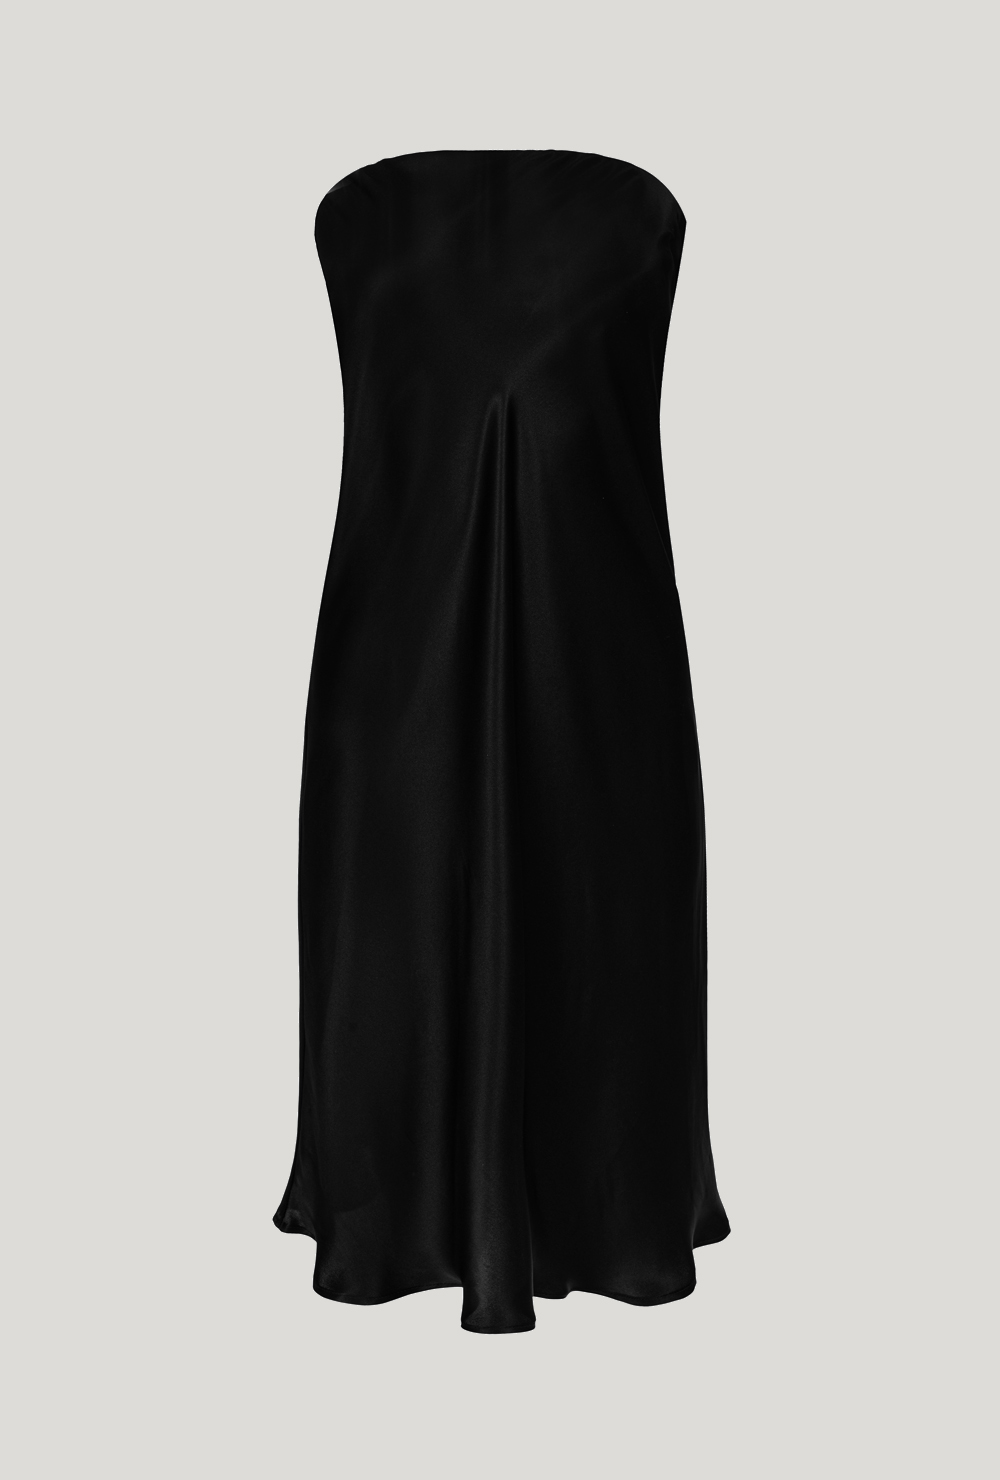 Silk strapless midi tube dress in black